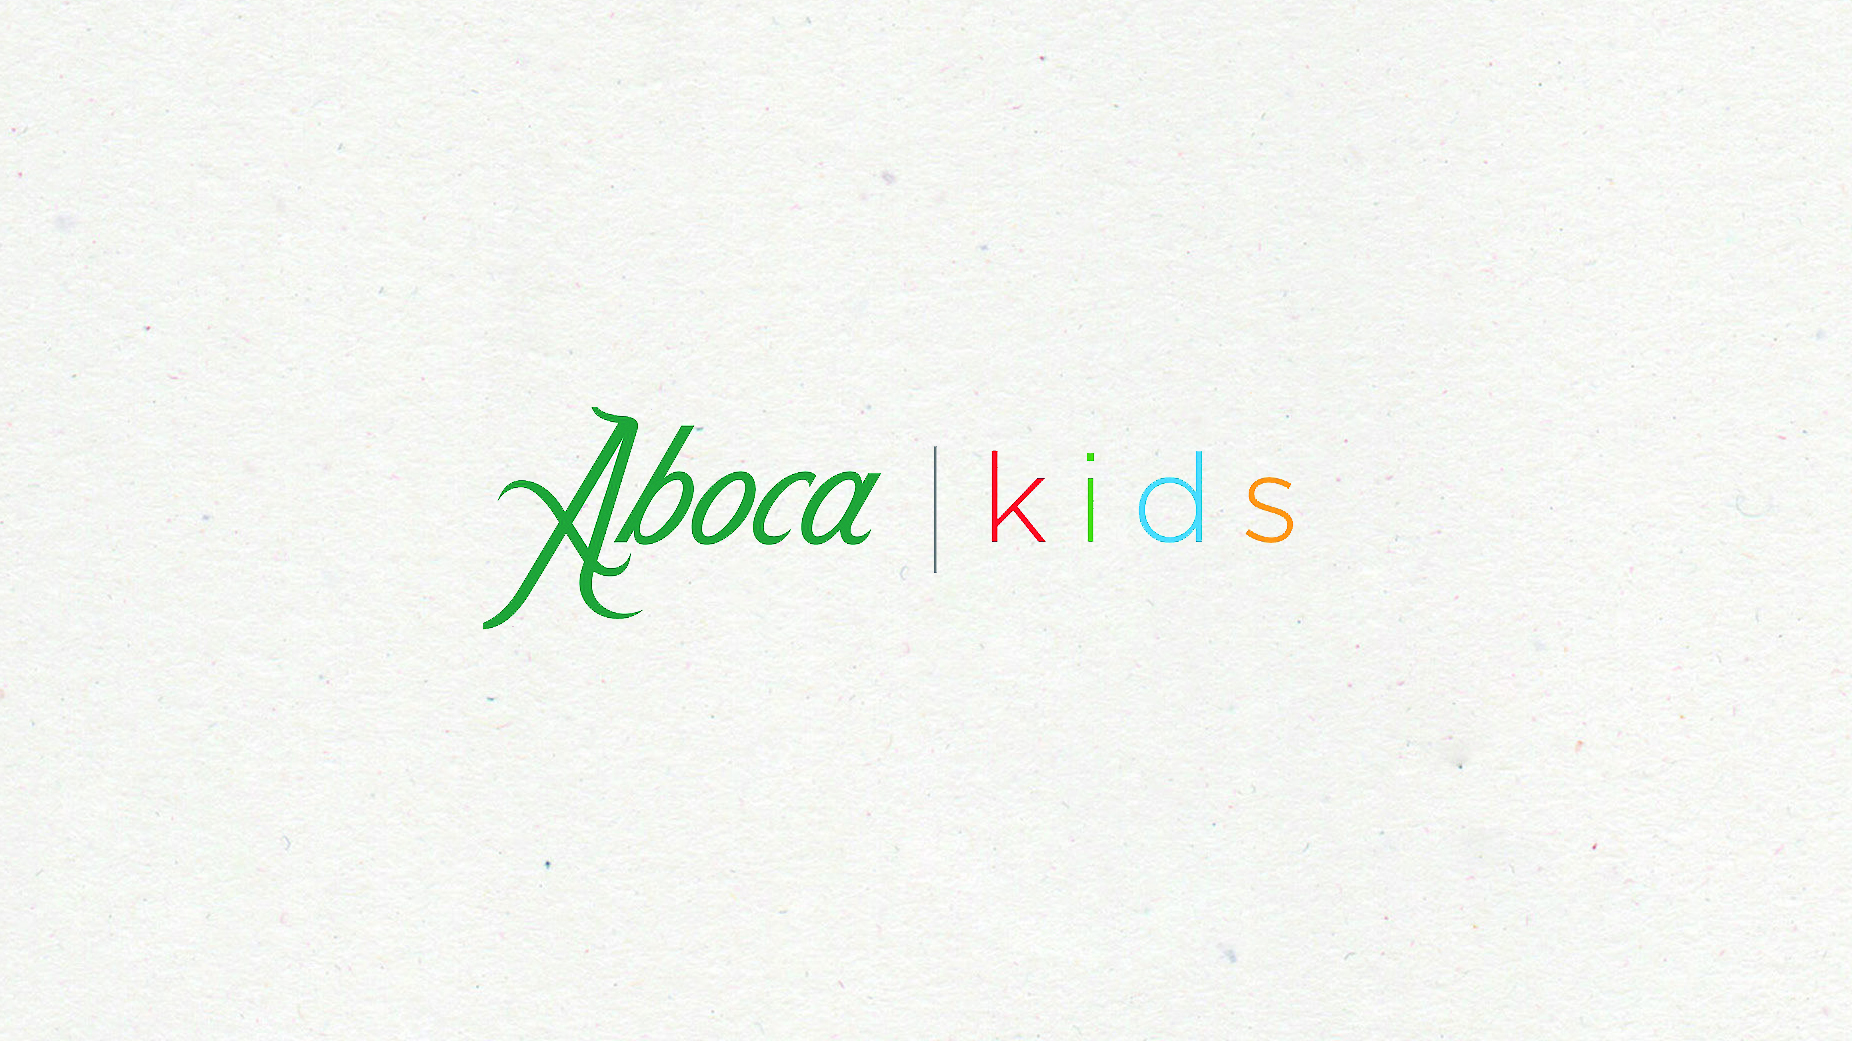 Aboca Kids: ambiente, natura e ed ecologia raccontati alle nuove generazioni